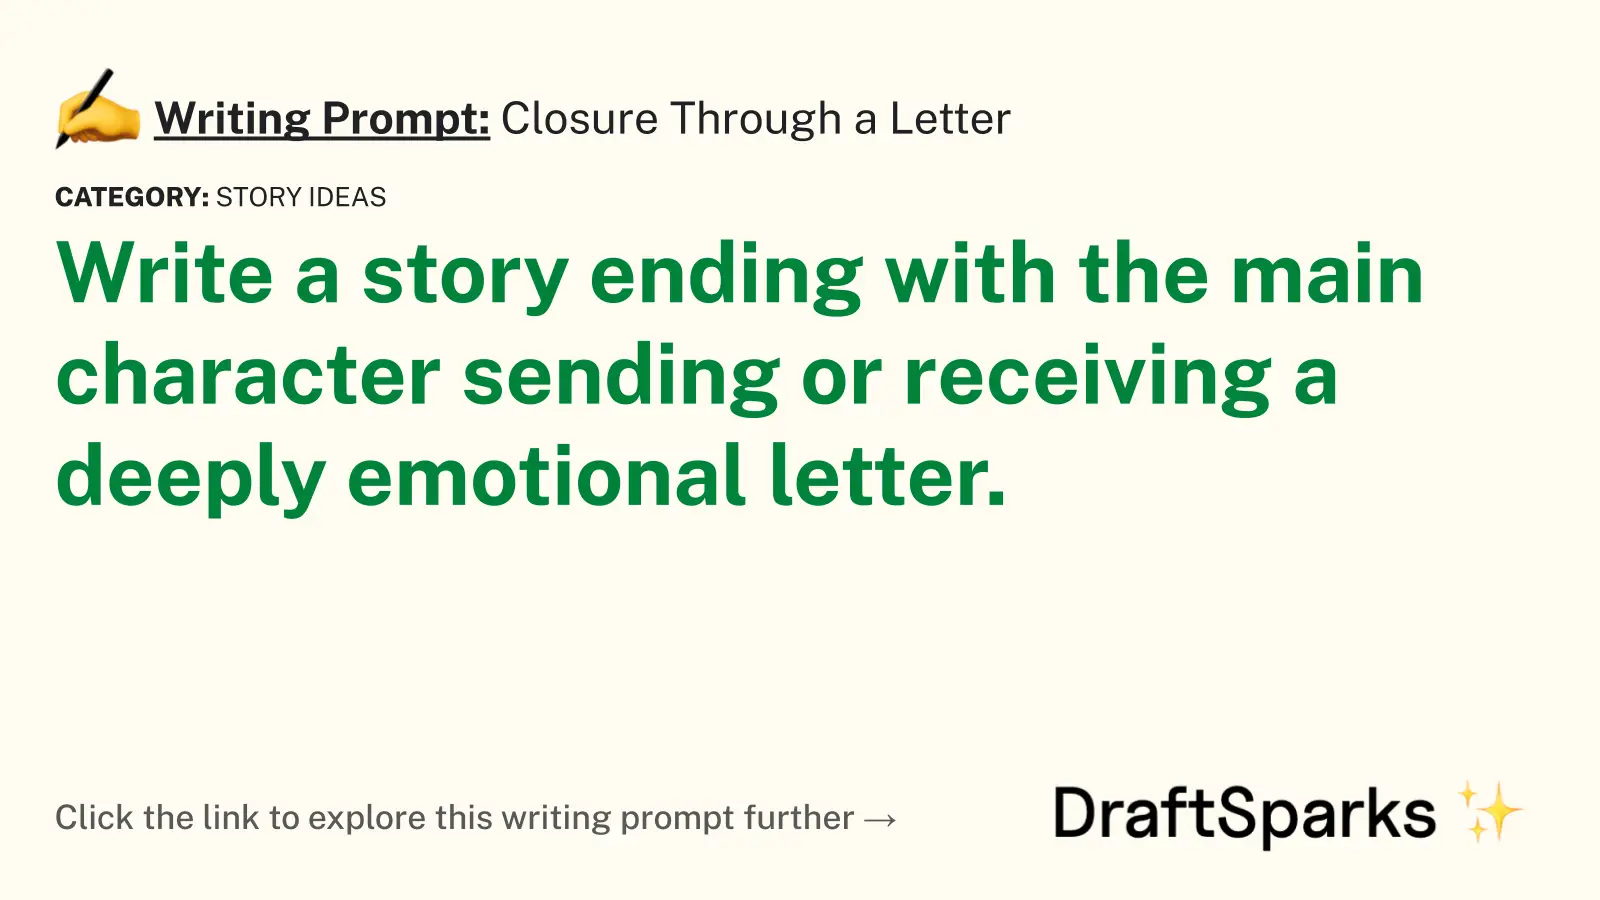 Closure Through a Letter